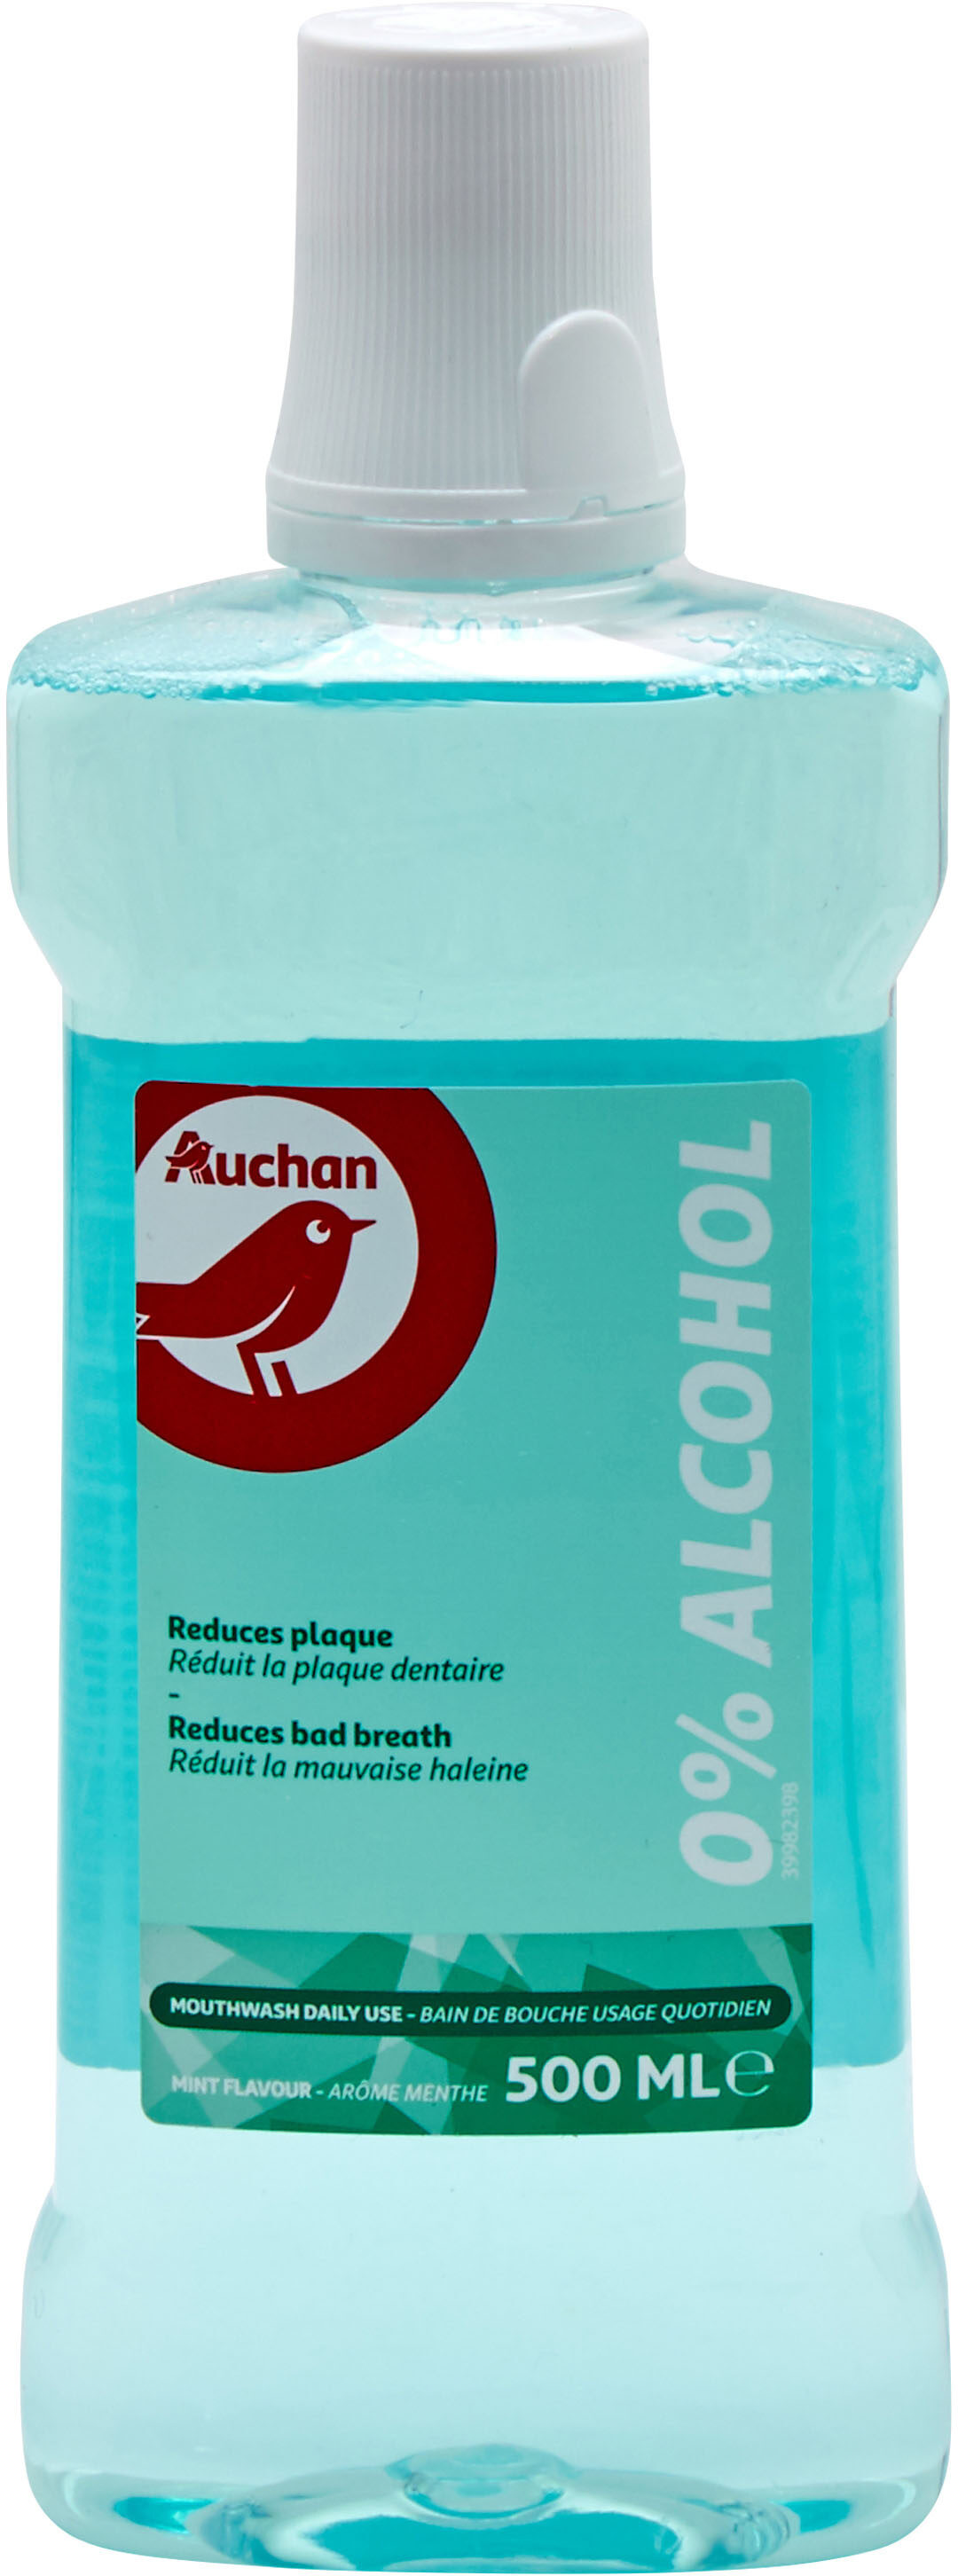 Auchan - bain de bouche - fraicheur 0% alcool - 500ml - Produkto - fr